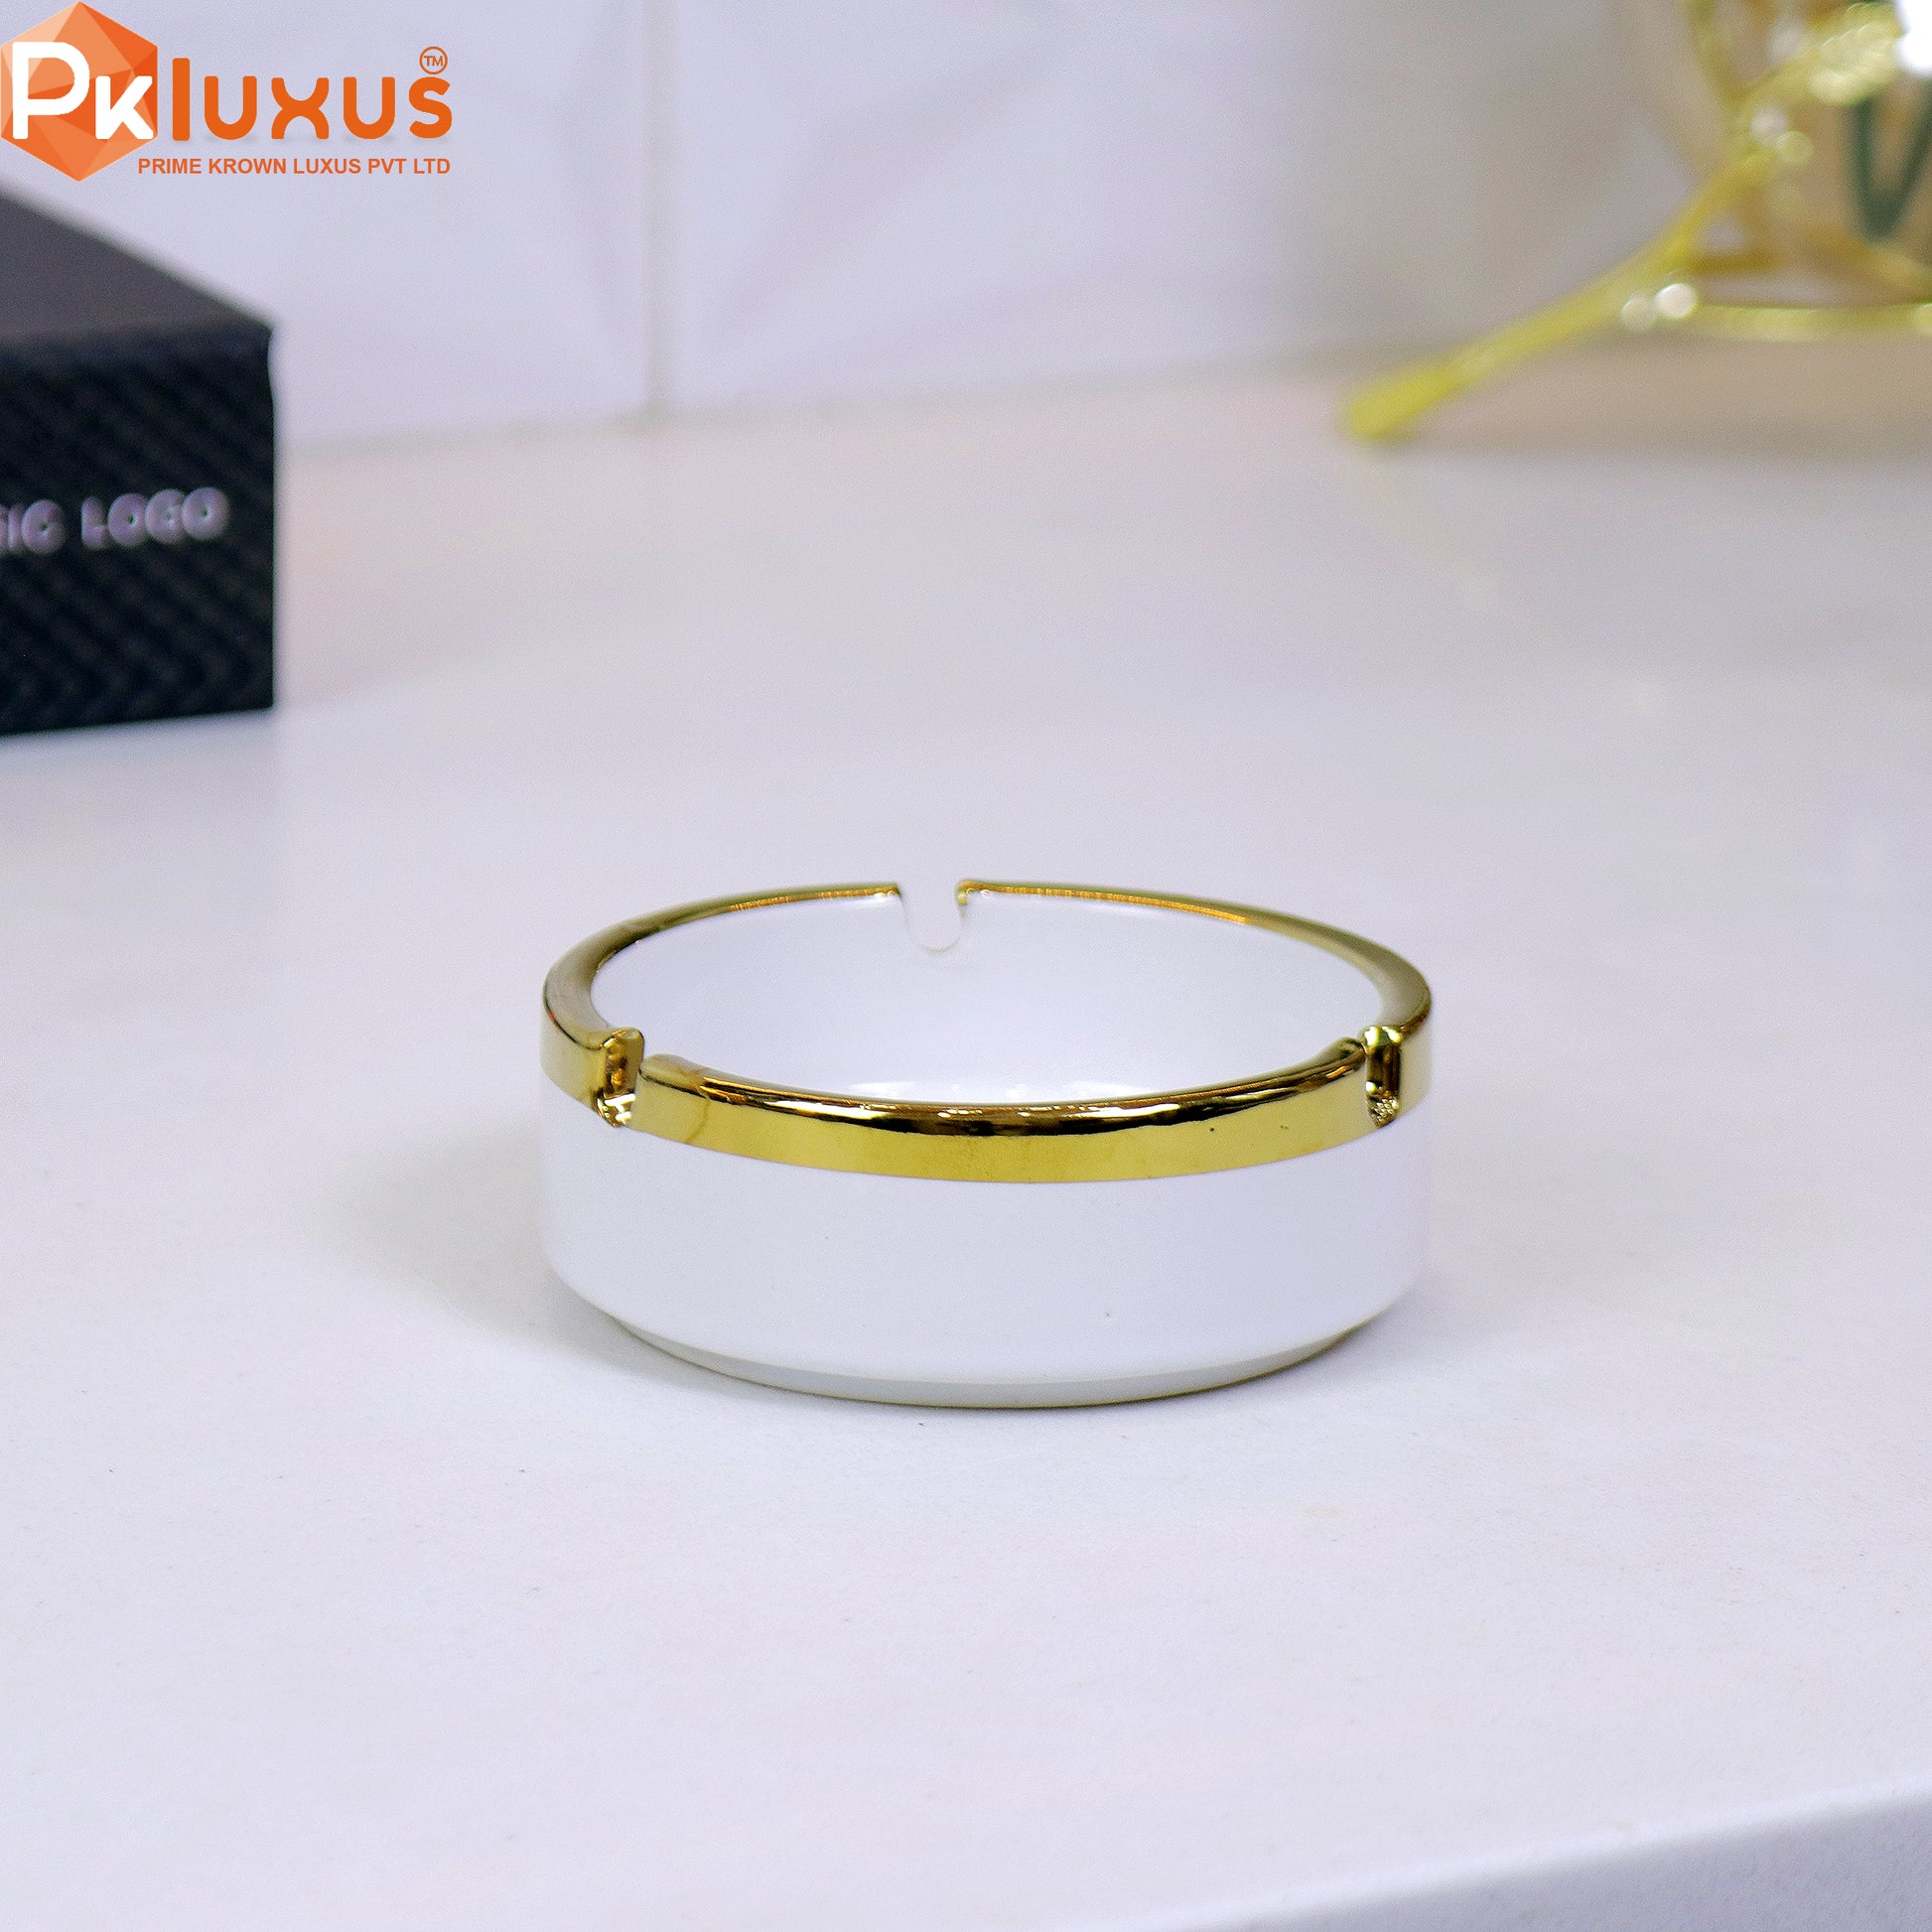 Luxury White & Golden Ashtray By PK LUXUS™ - PK LUXUS